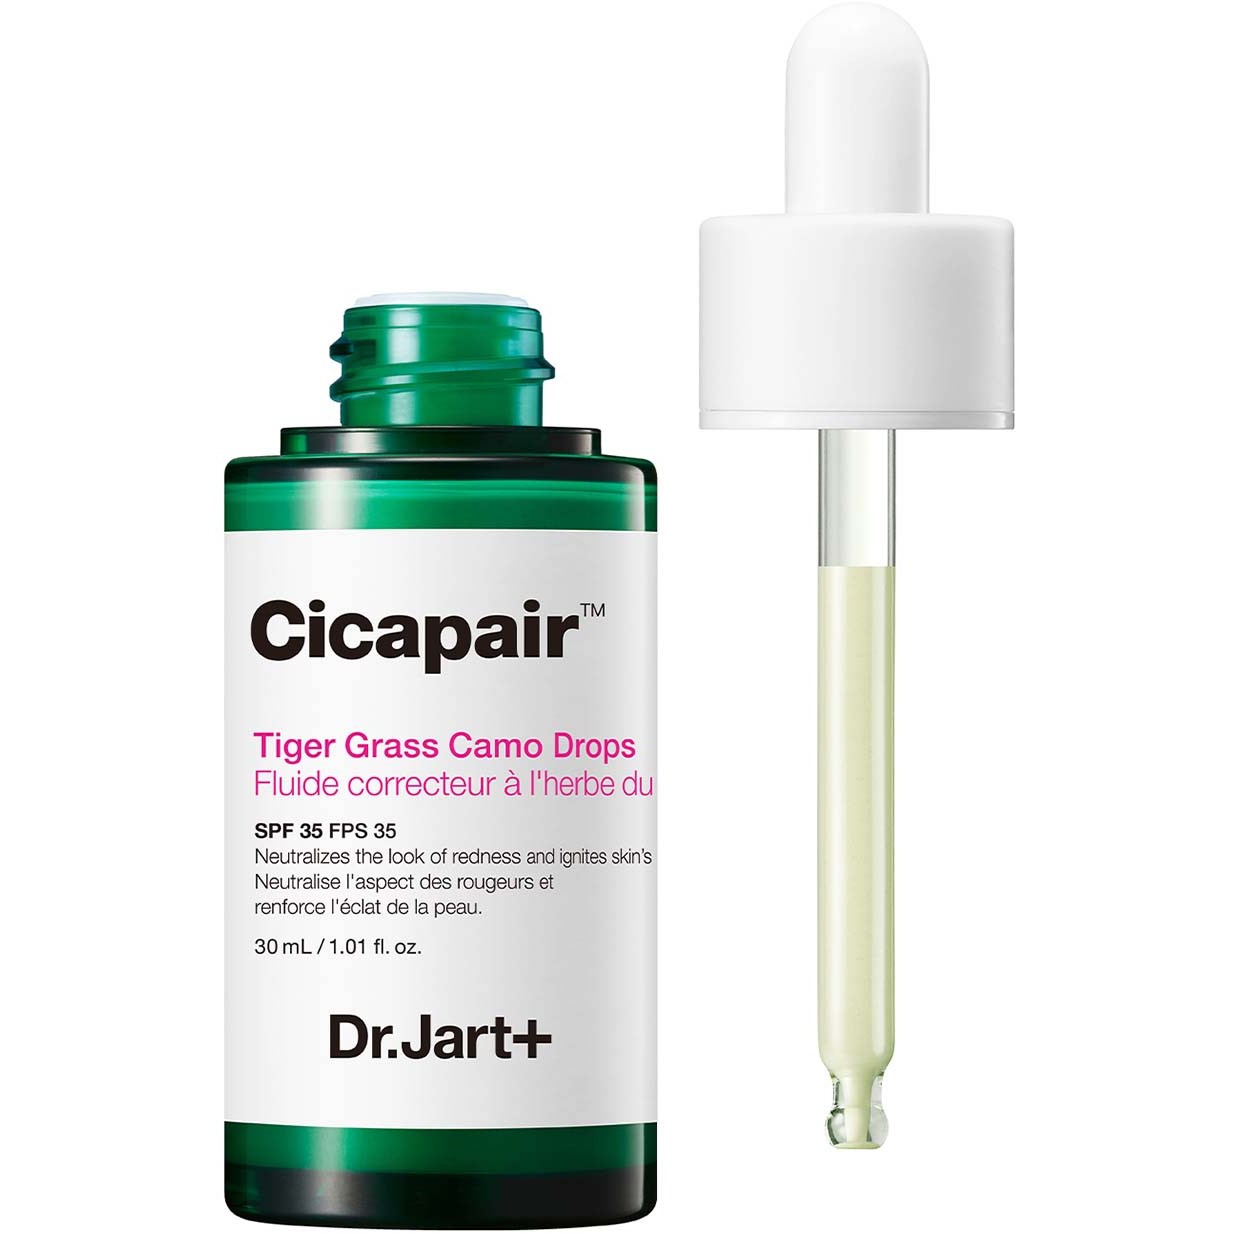 Dr. Jart+ Dr.Jart+ Cicapair Tiger Grass Camo Drops 30 ml